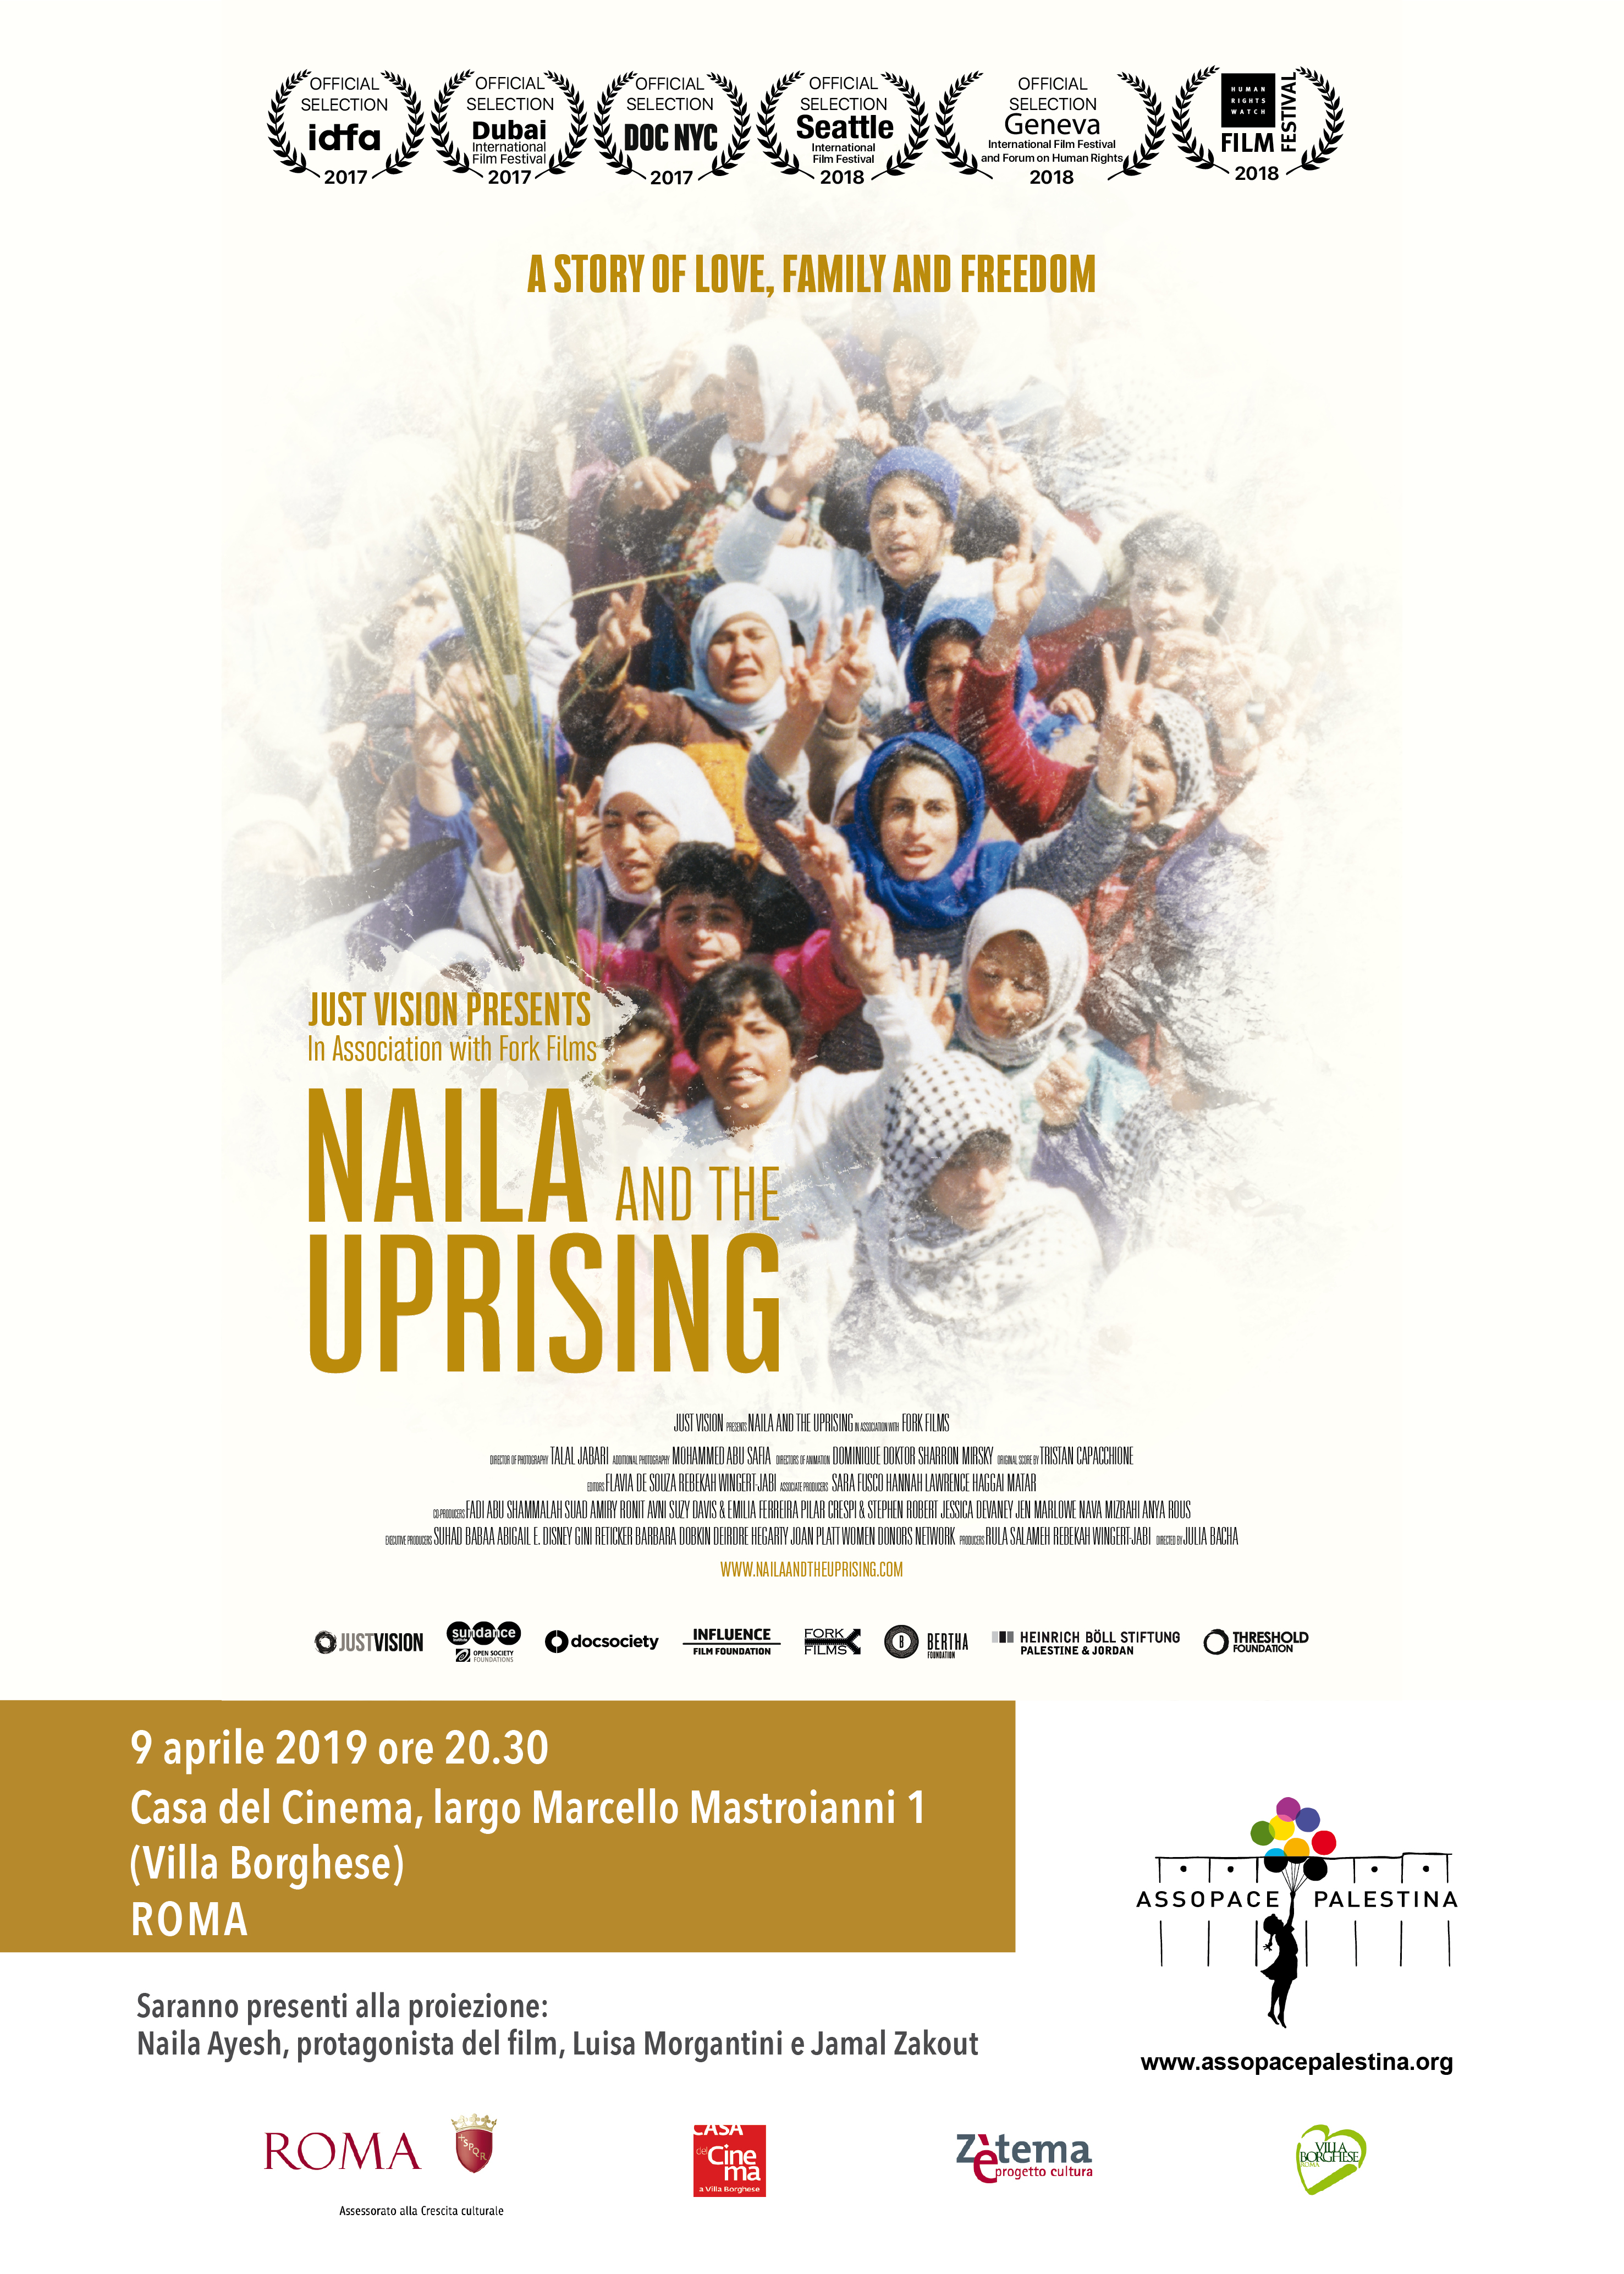 Roma, 9 aprile: proiezione di “Naila and the uprising” con la presenza dei protagonisti.